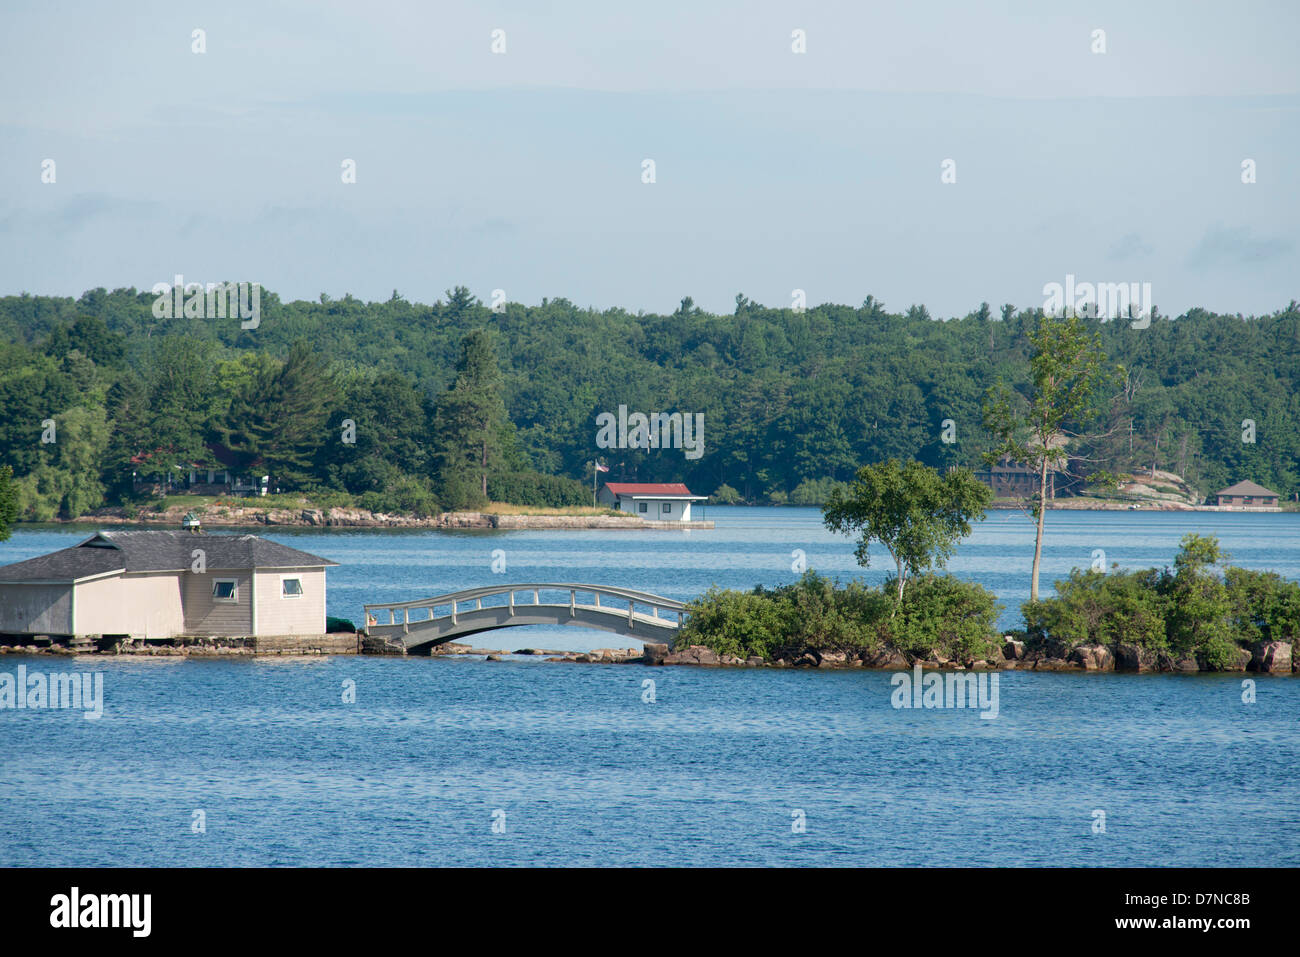 New York, la Voie maritime du Saint-Laurent, des Mille-Îles. Accueil de l'île avec pont. Banque D'Images